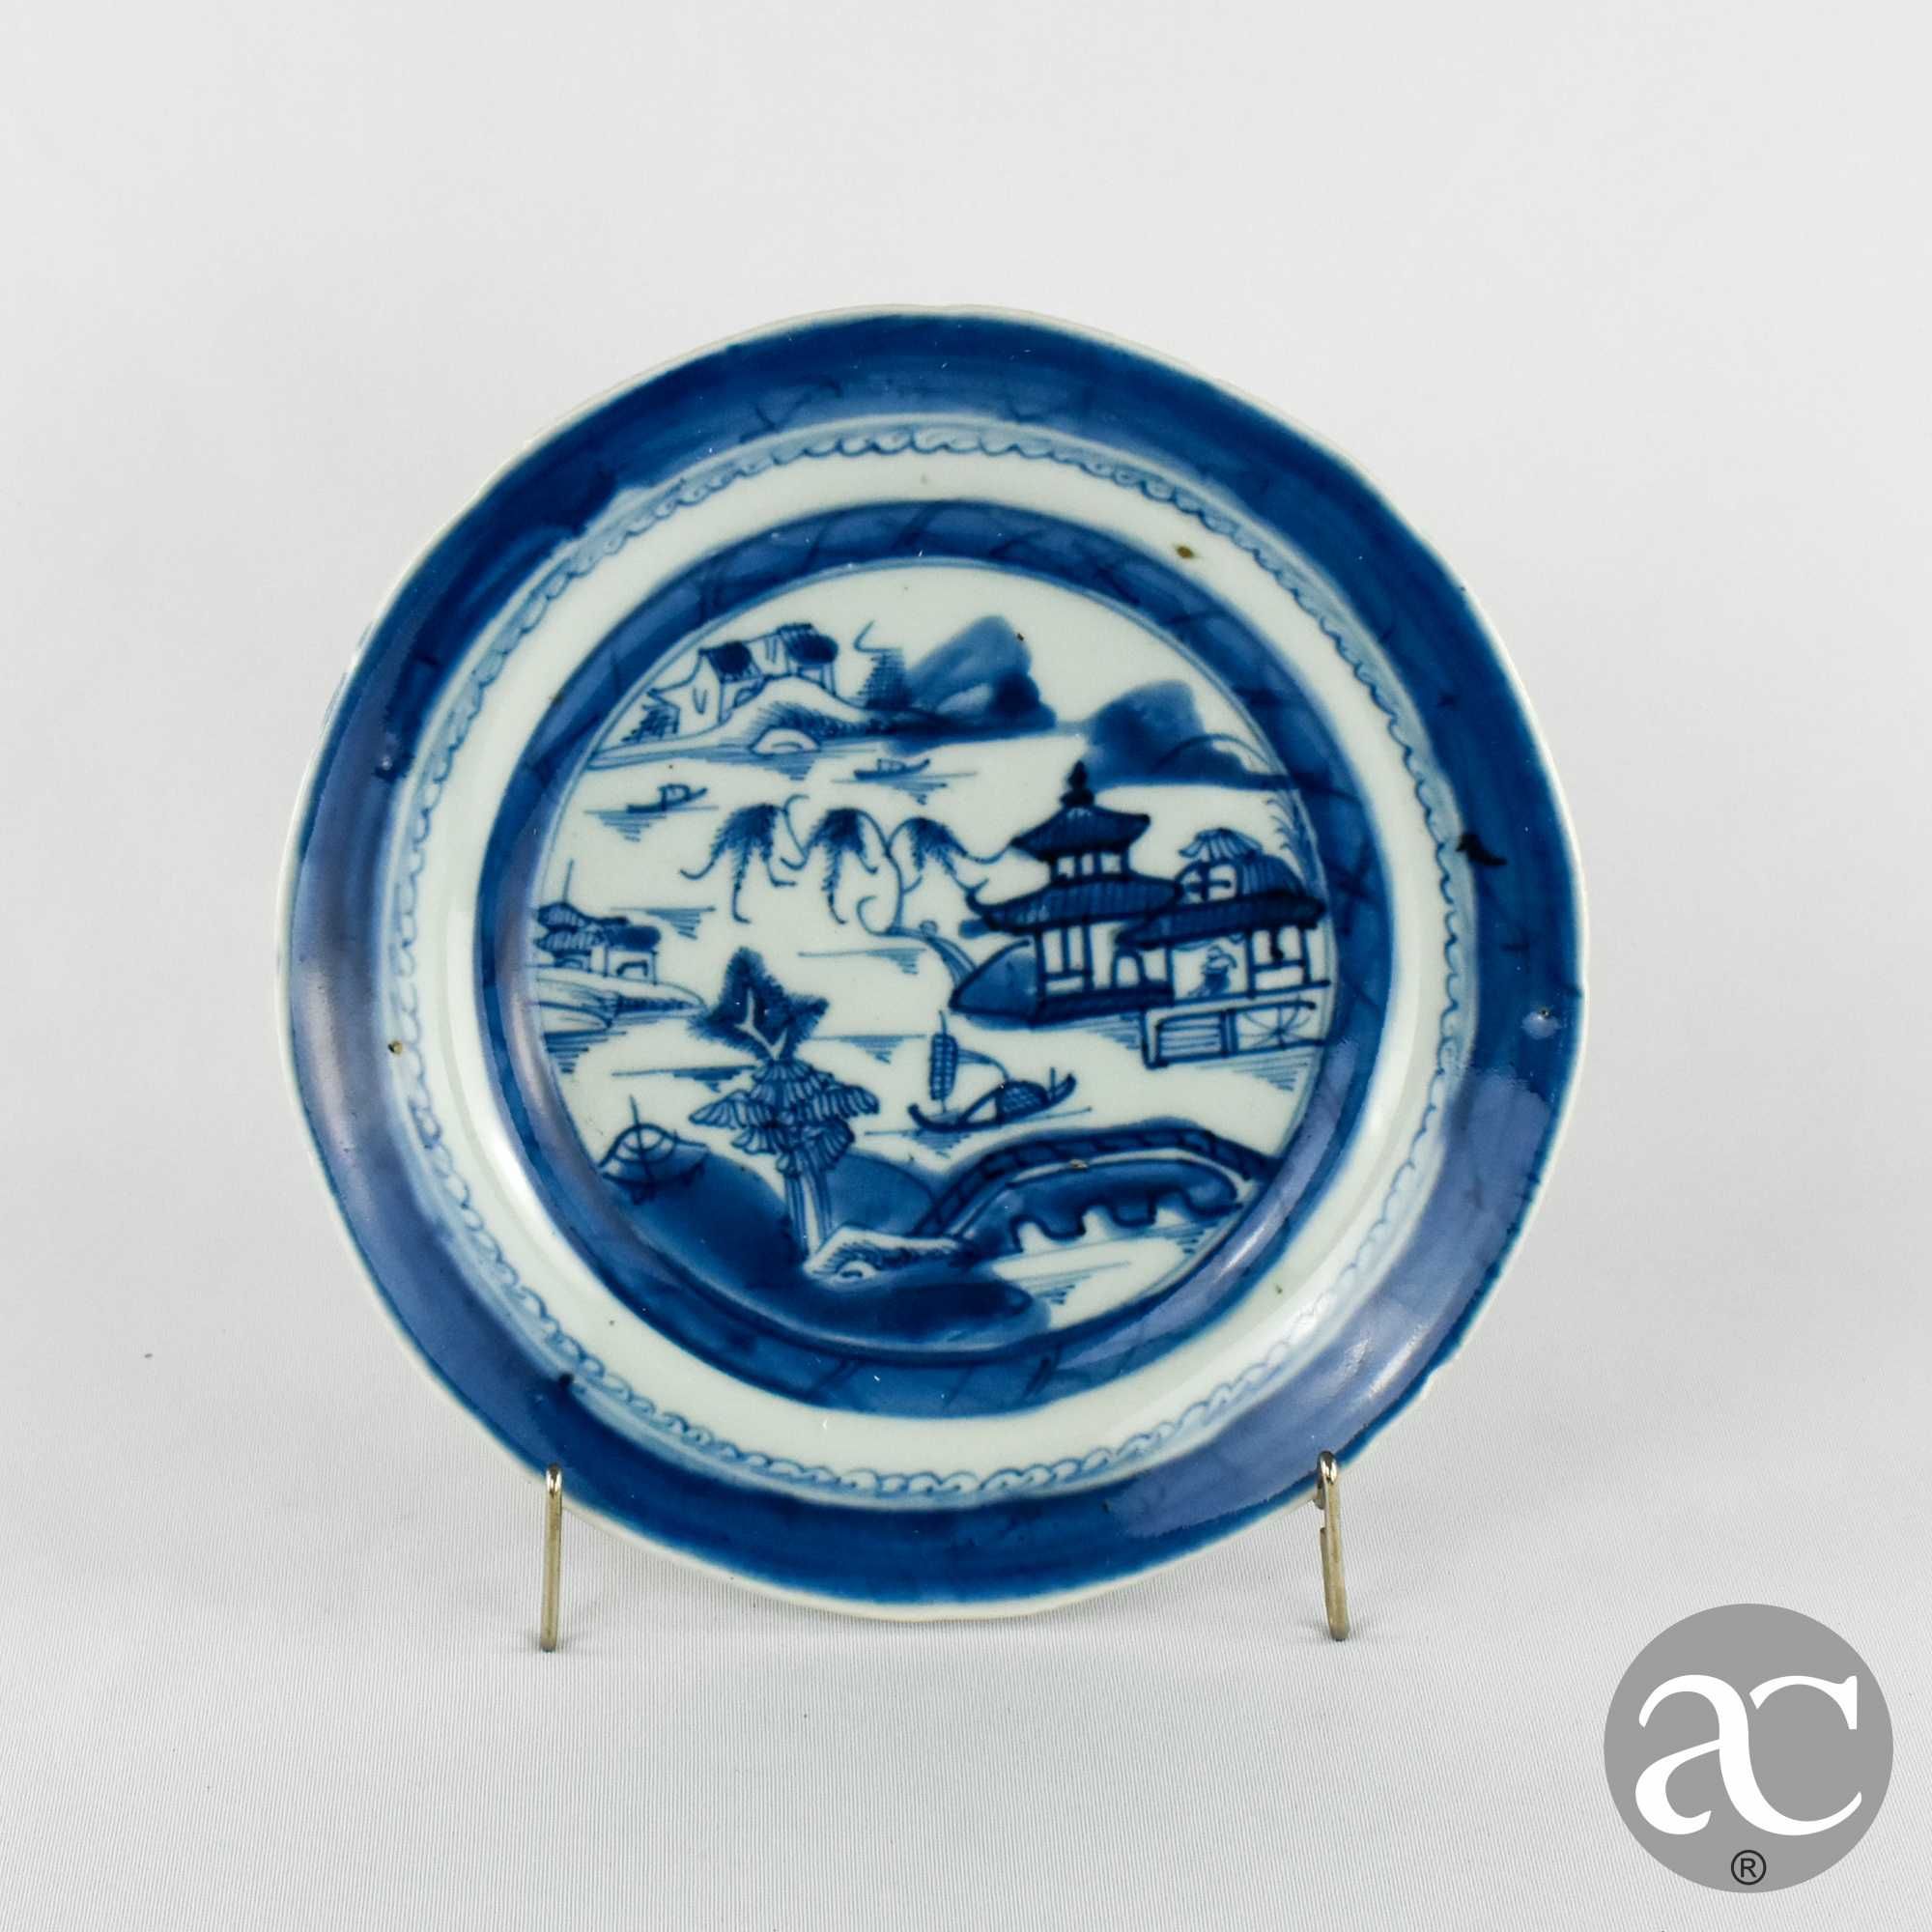 Prato porcelana da China, Cantão, paisagem e pagodes, séc. XVIII